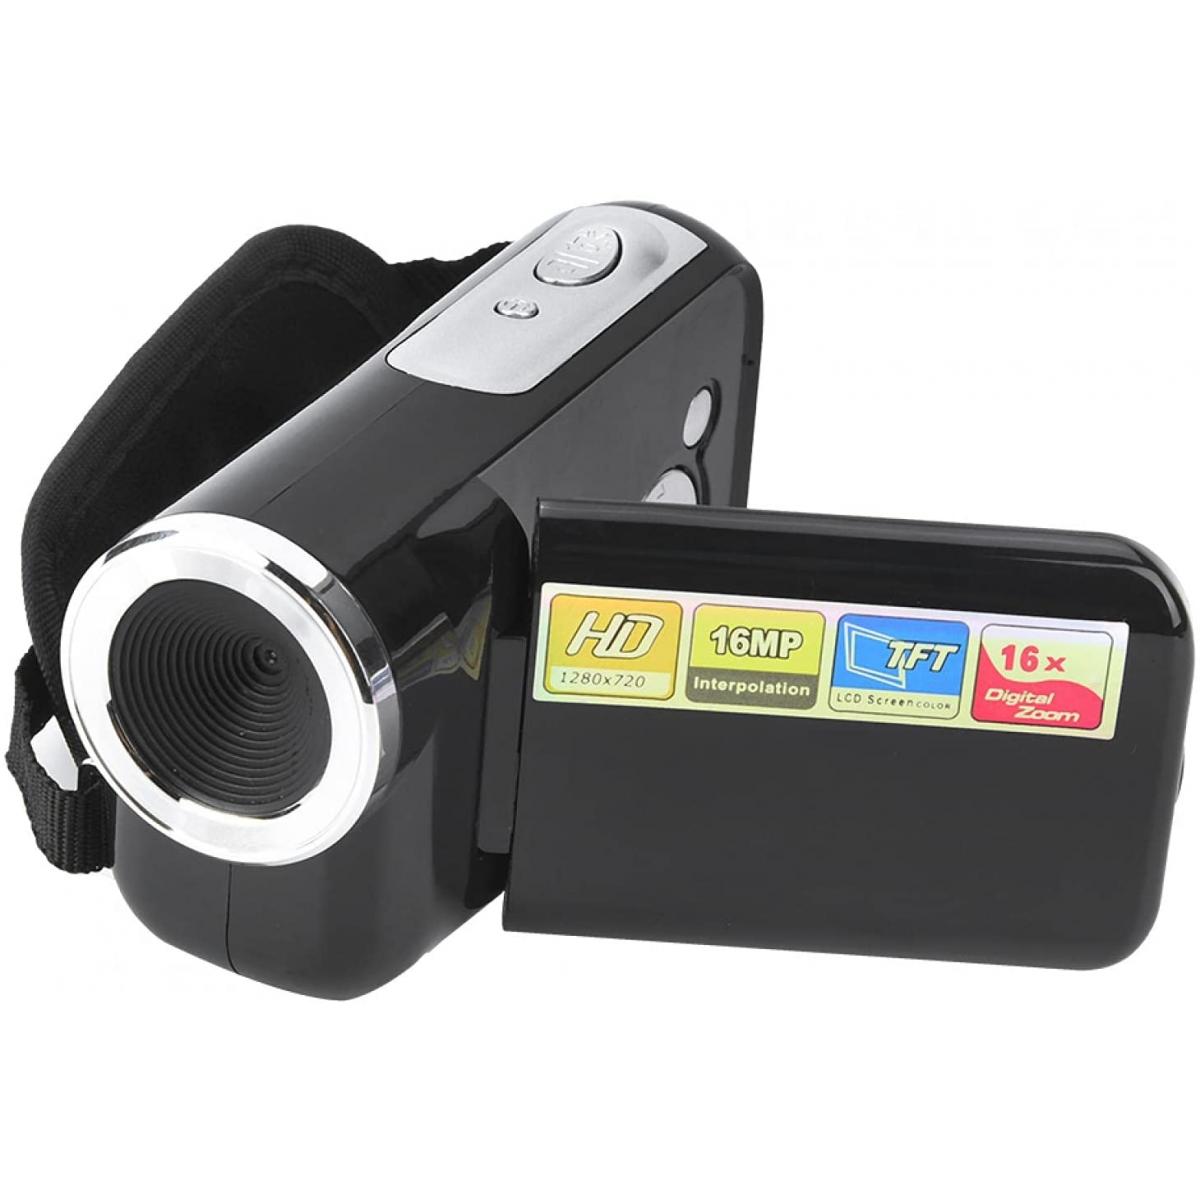 Caméra d'action Vendos85 Caméscope numérique TFT LCD de 2 pouces 1080 X 720 noir + 1 micro SD 16go